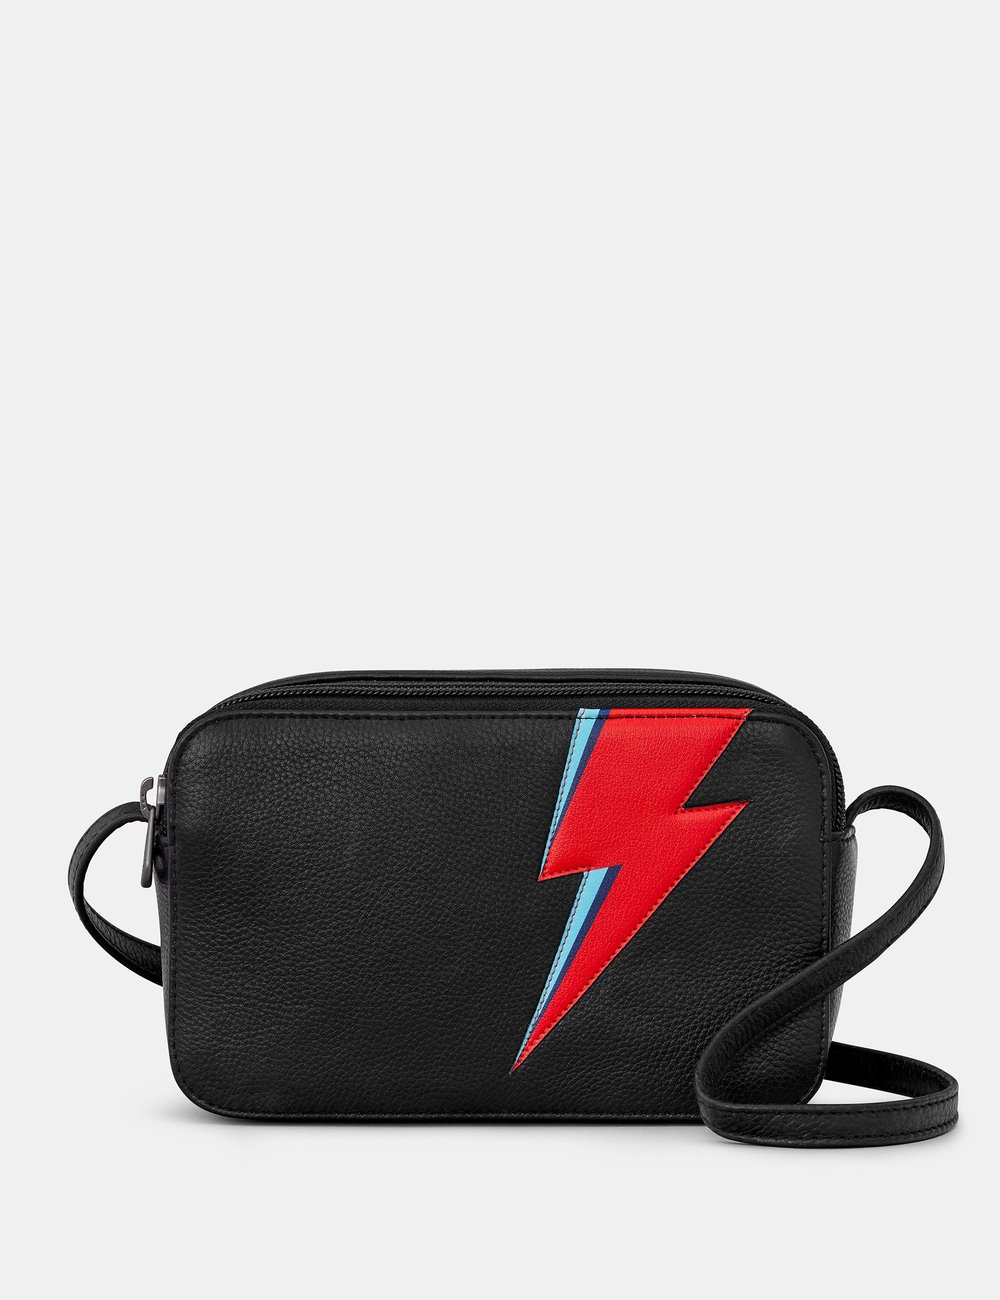 Lightning Bolt Black Leather Porter Cross Body Bag